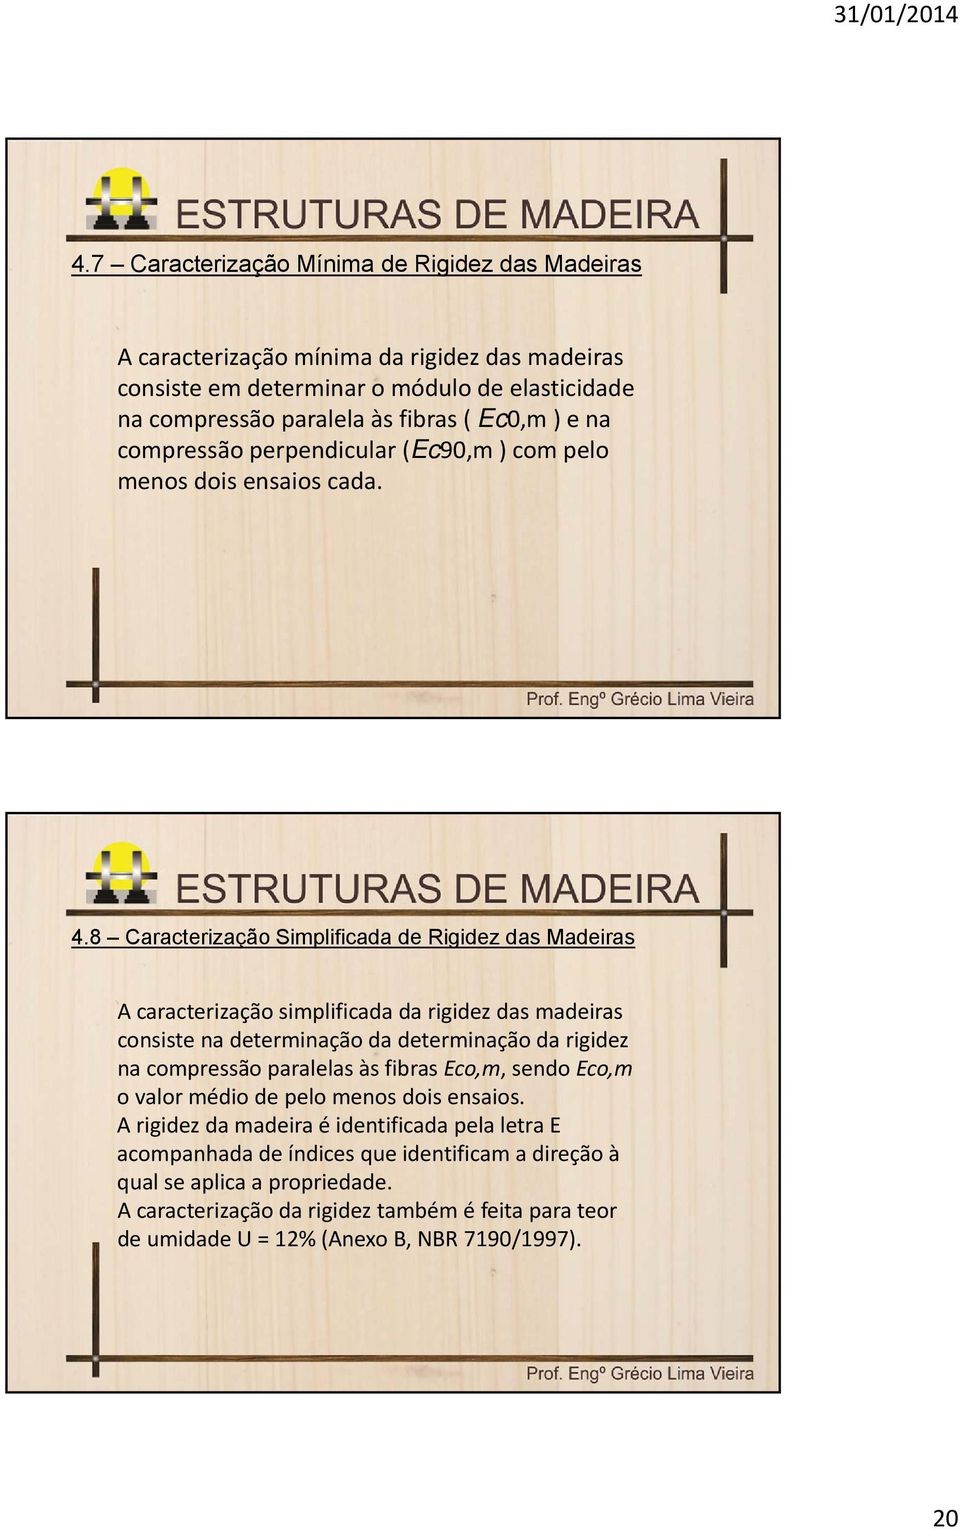 8 Caracterização Simplificada de Rigidez das Madeiras A caracterização simplificada da rigidez das madeiras consiste na determinação da determinação da rigidez na compressão paralelas às